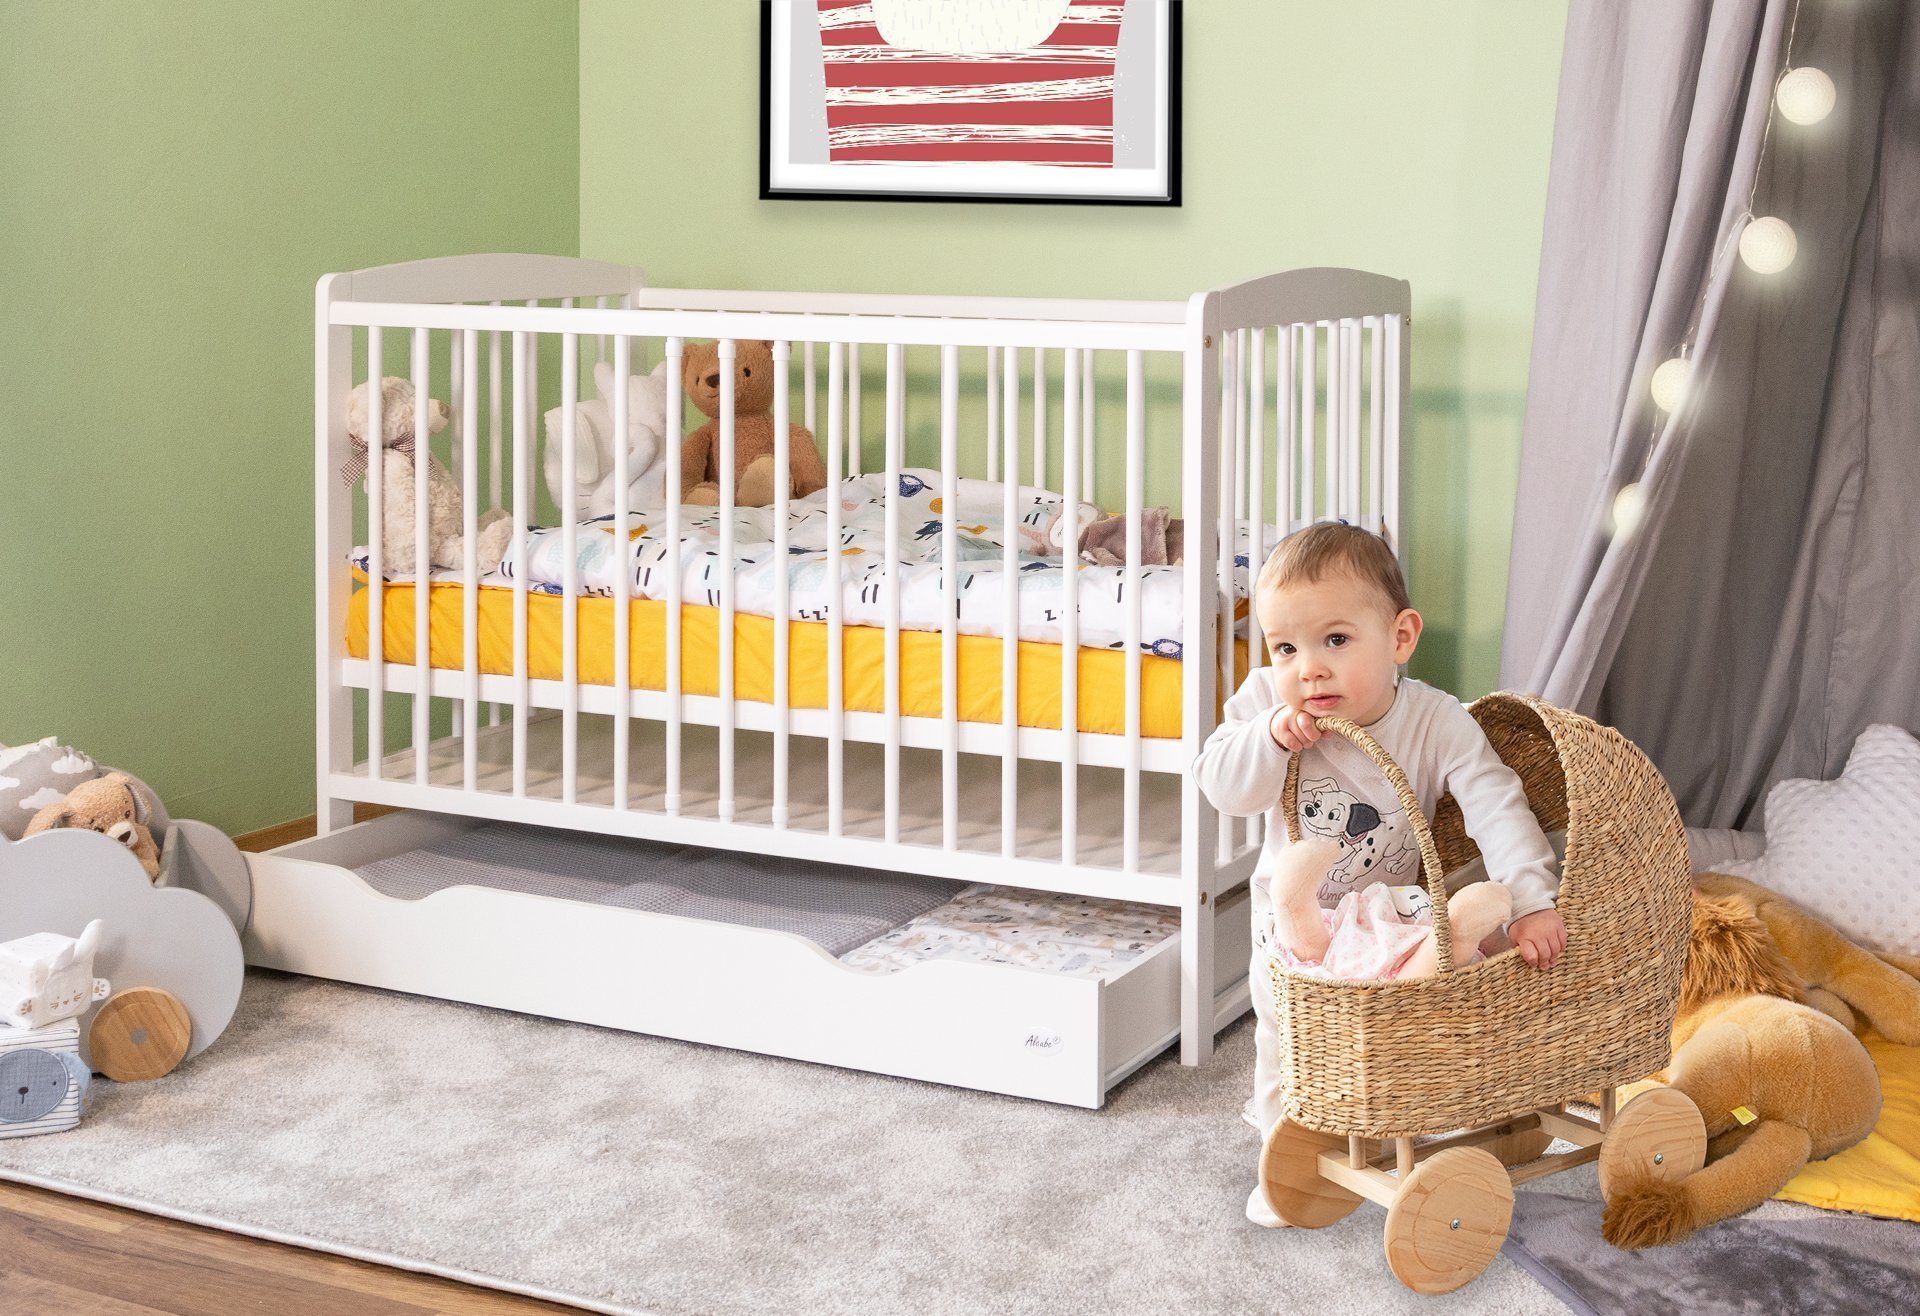 Babybett Kinderbett Eule 120x60 Bettset Matratze Design Neu 